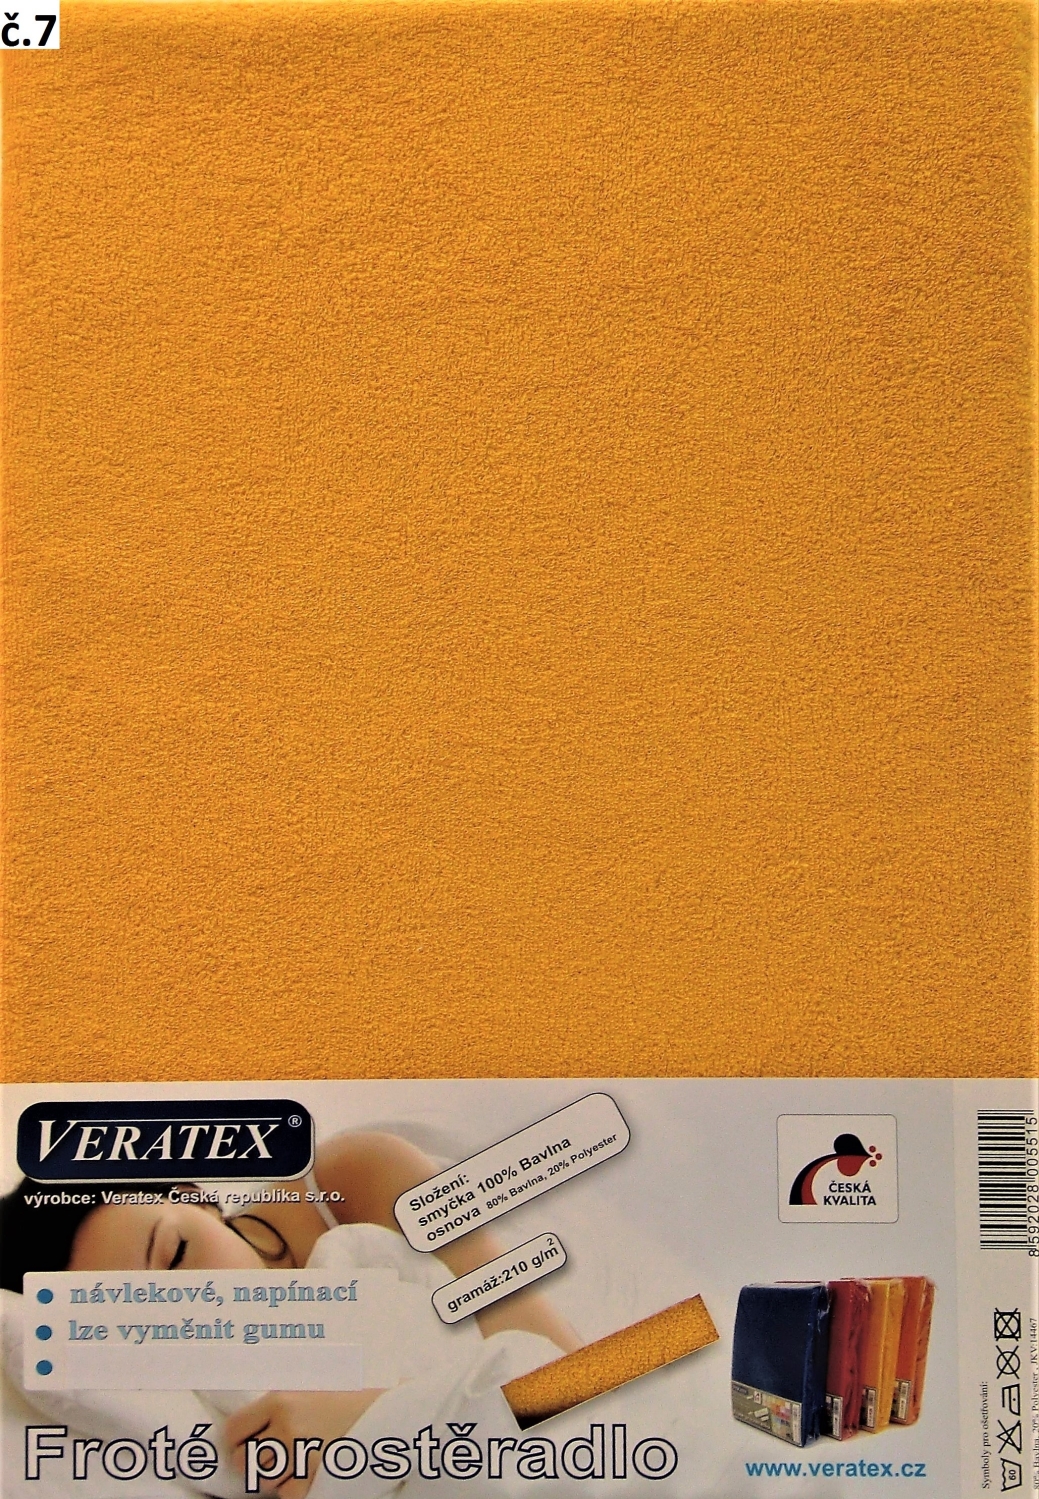 Veratex Froté prostěradlo jednolůžko 100x200/25cm (č. 7-sytě žluté)